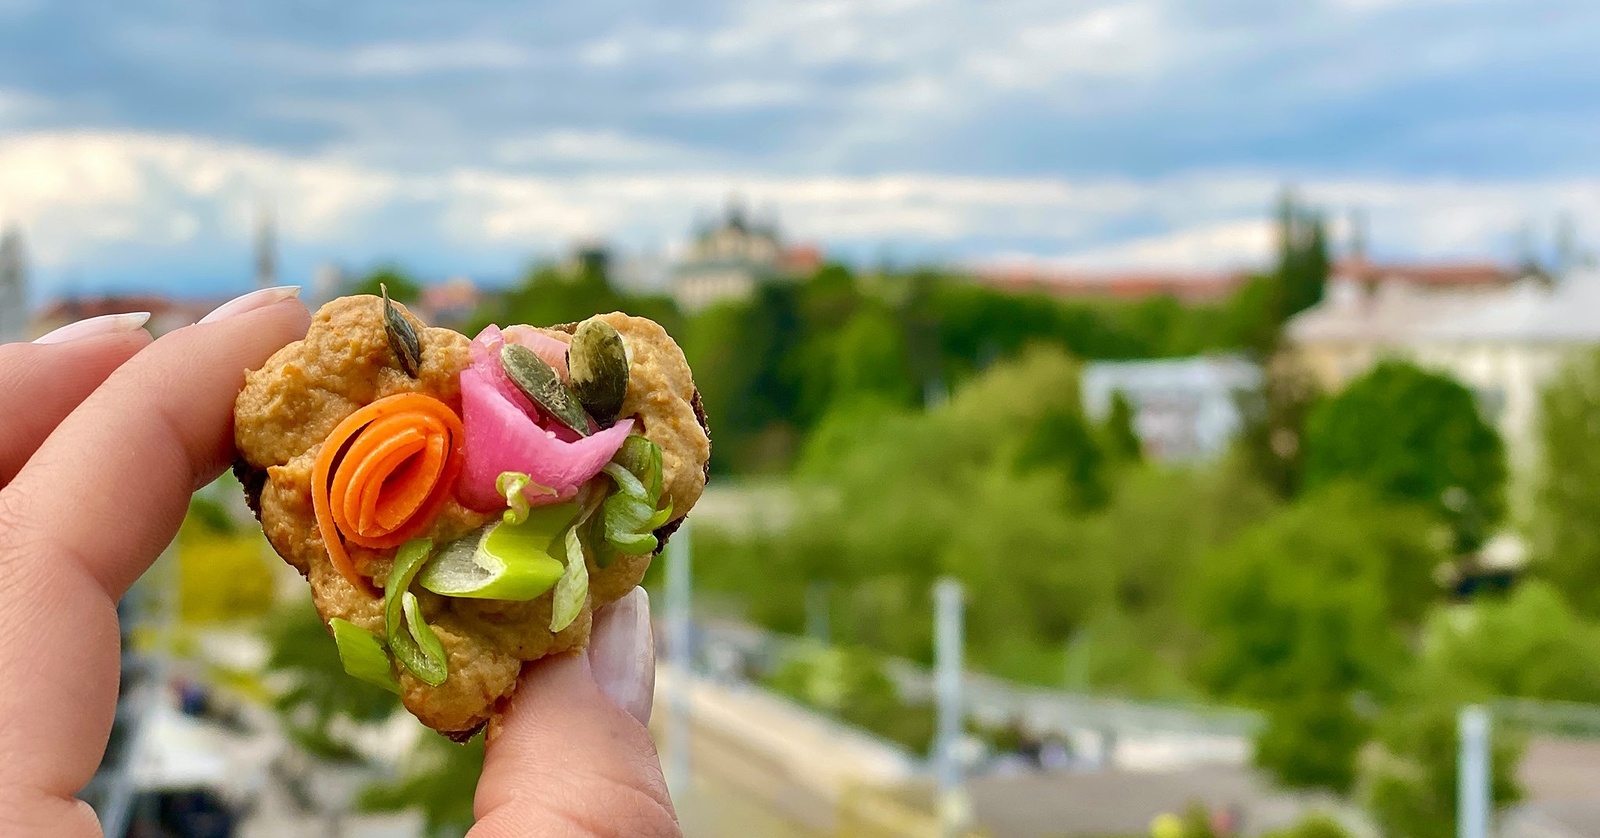 Lehký oběd v Olomouci? Najdete kvalitní modernu, exotiku i veganské dobroty  - Olomoucký deník